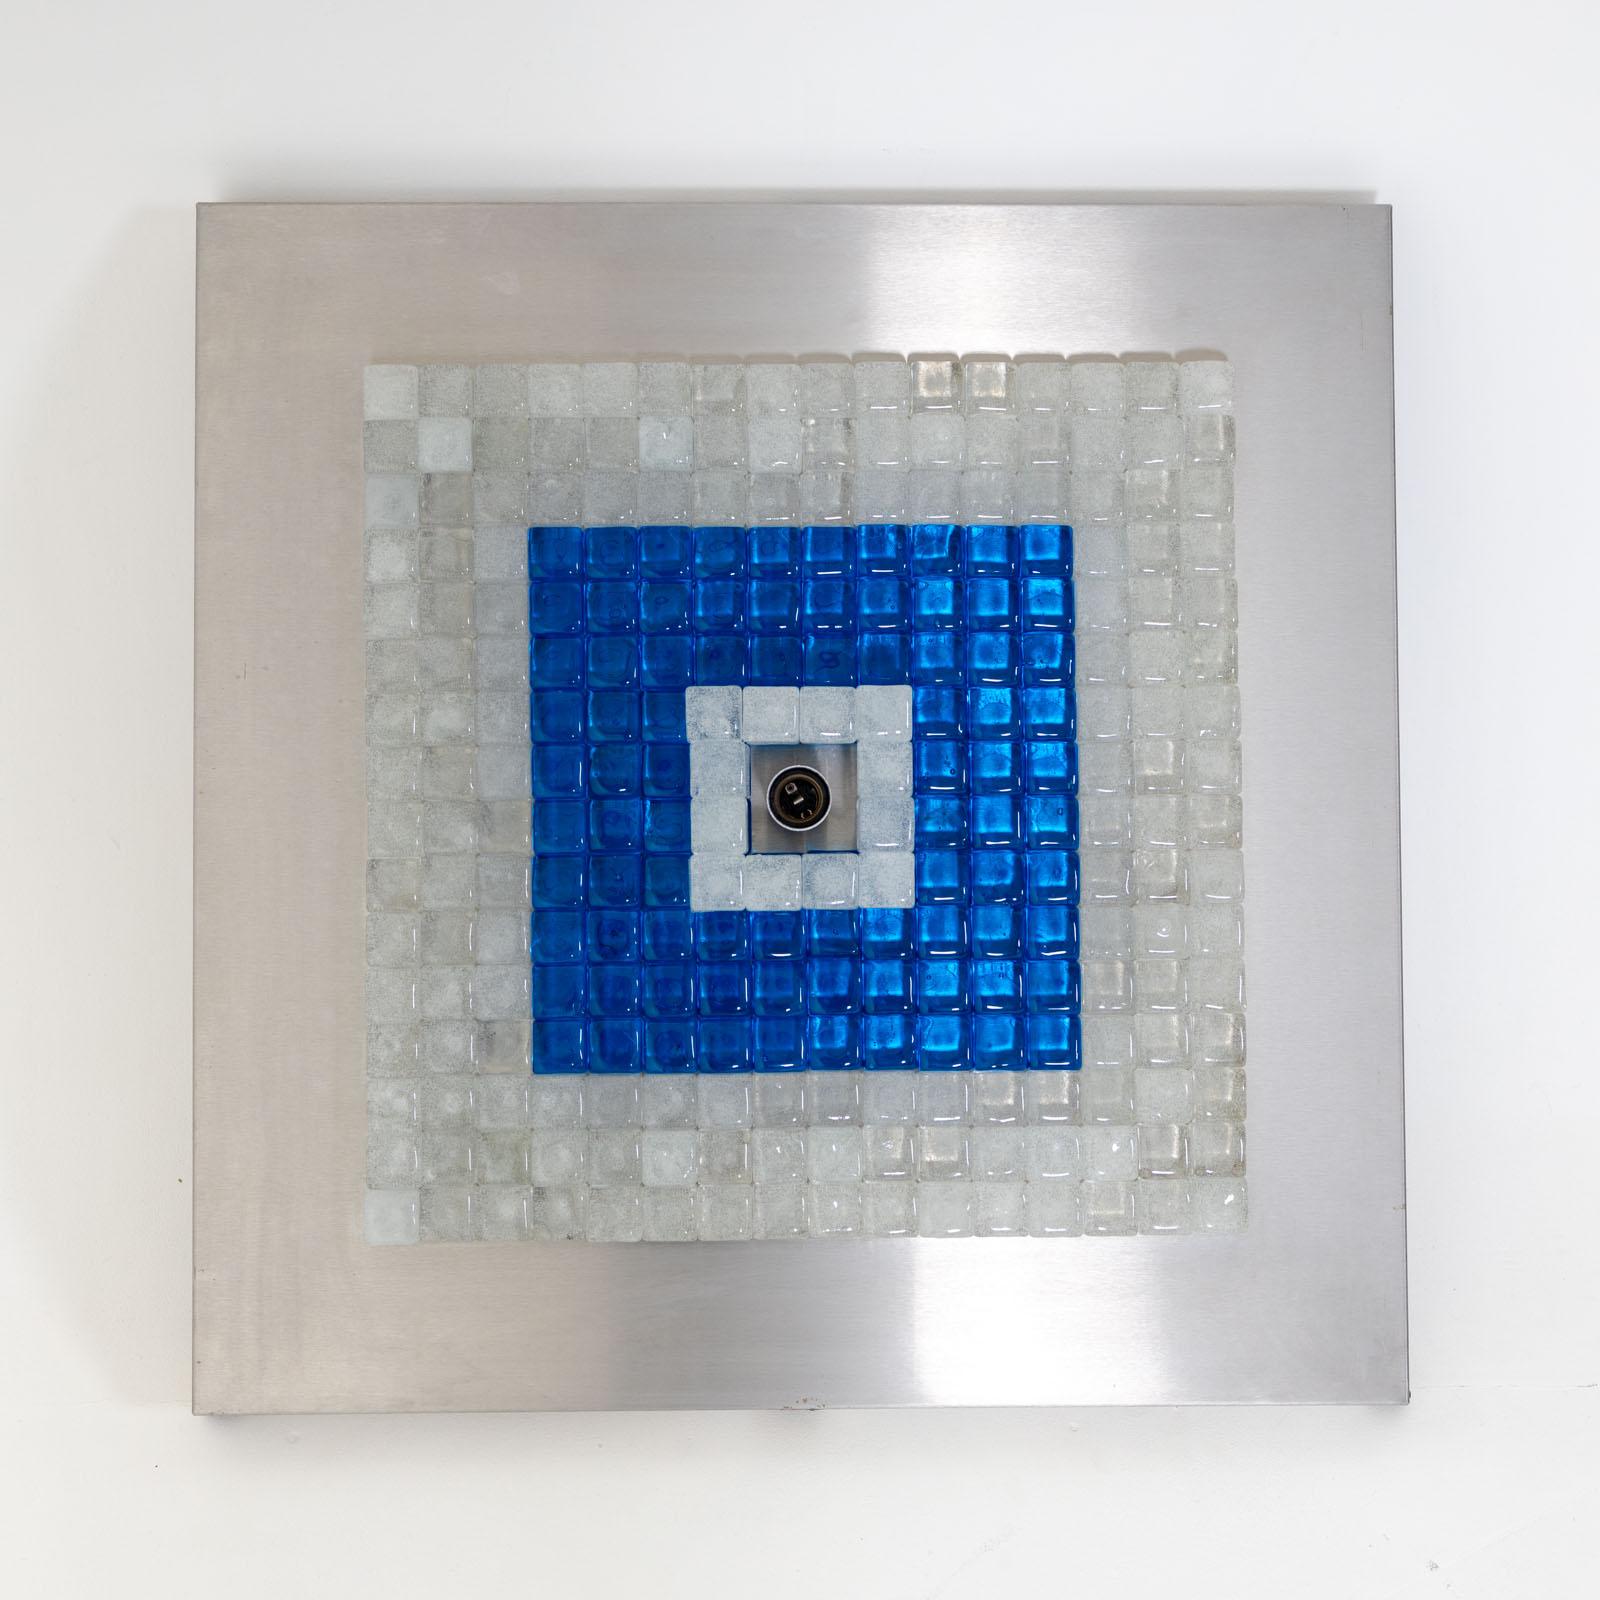 Quadratische Decken- oder Wandleuchte, entworfen von Albano Poli für Poliarte in den 1970er Jahren. Die Leuchte besteht aus einem Metallrahmen mit kleineren Quadraten aus blauem und klarem Glas, die um eine zentrale Fassung gruppiert sind.